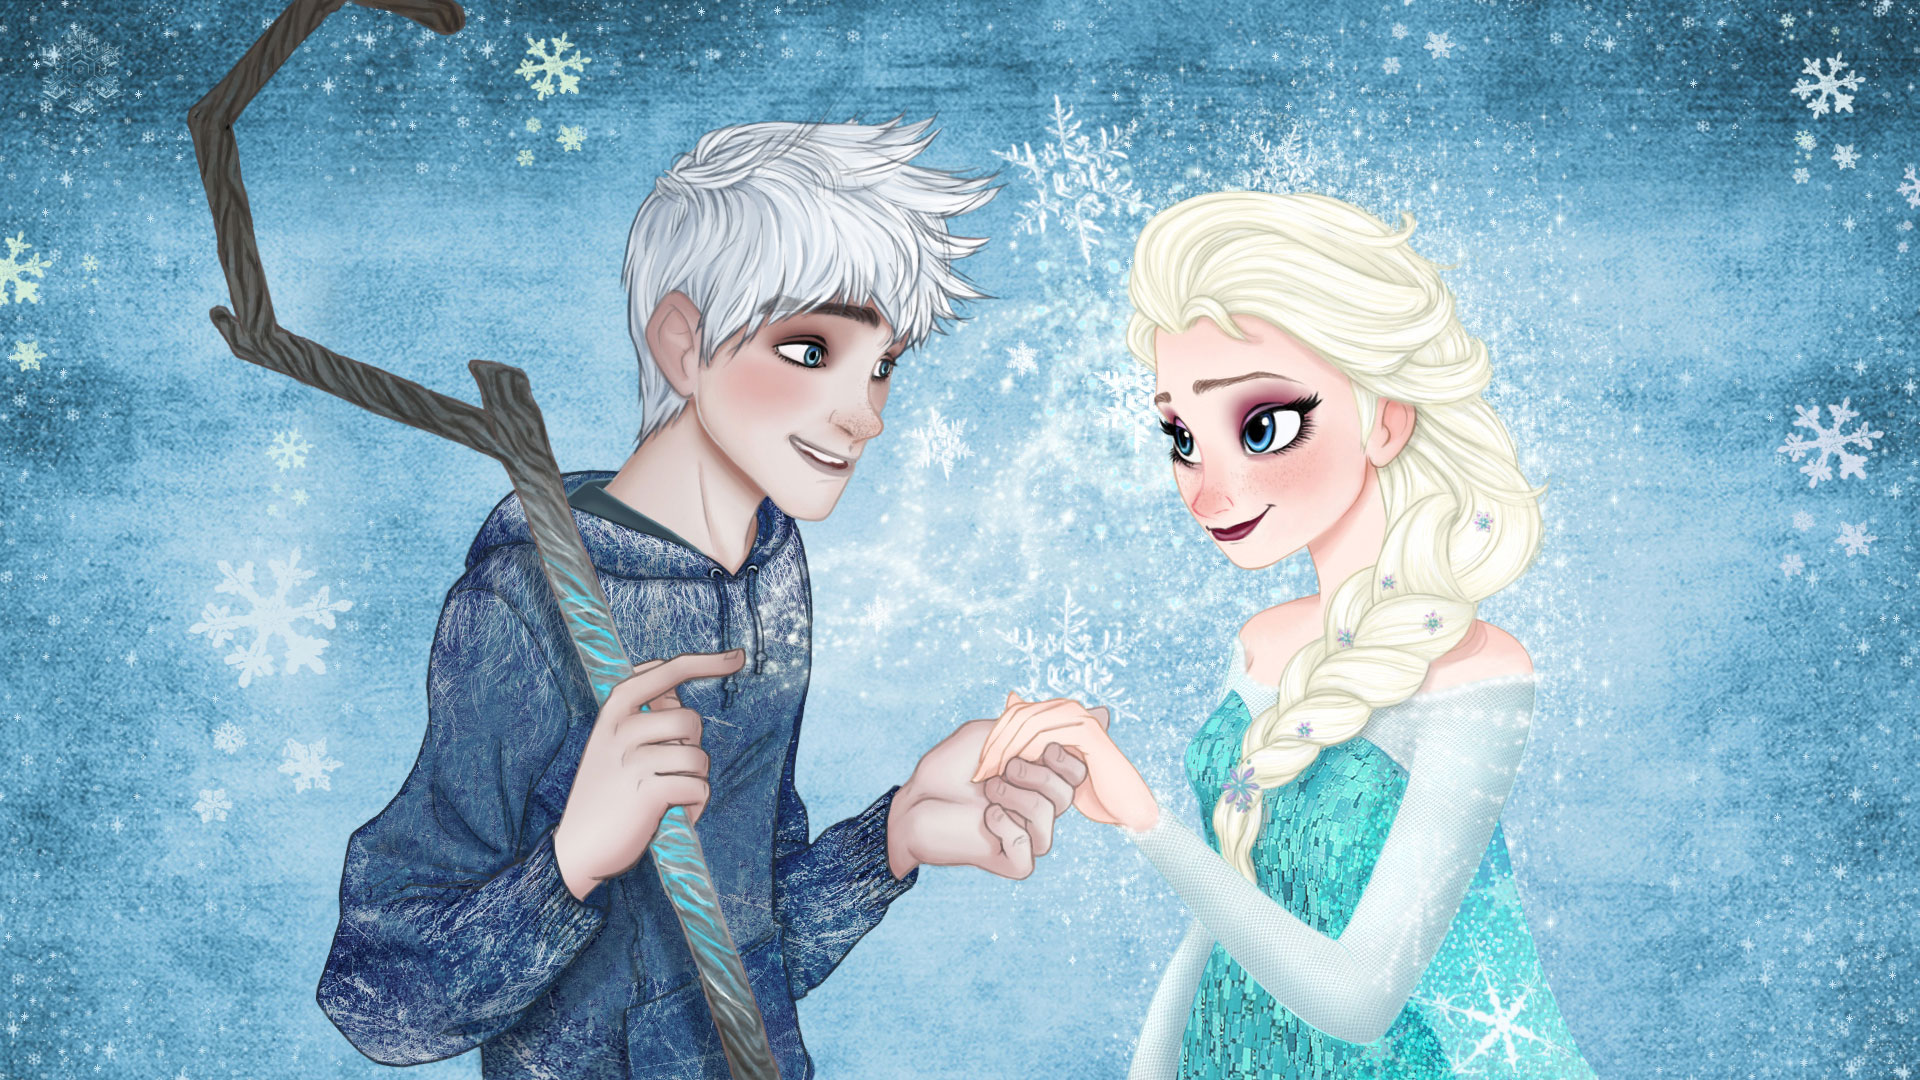 Nữ hoàng băng giá Fever Elsa Phone hình nền - Elsa the Snow Queen bức ảnh  (38787335) - fanpop